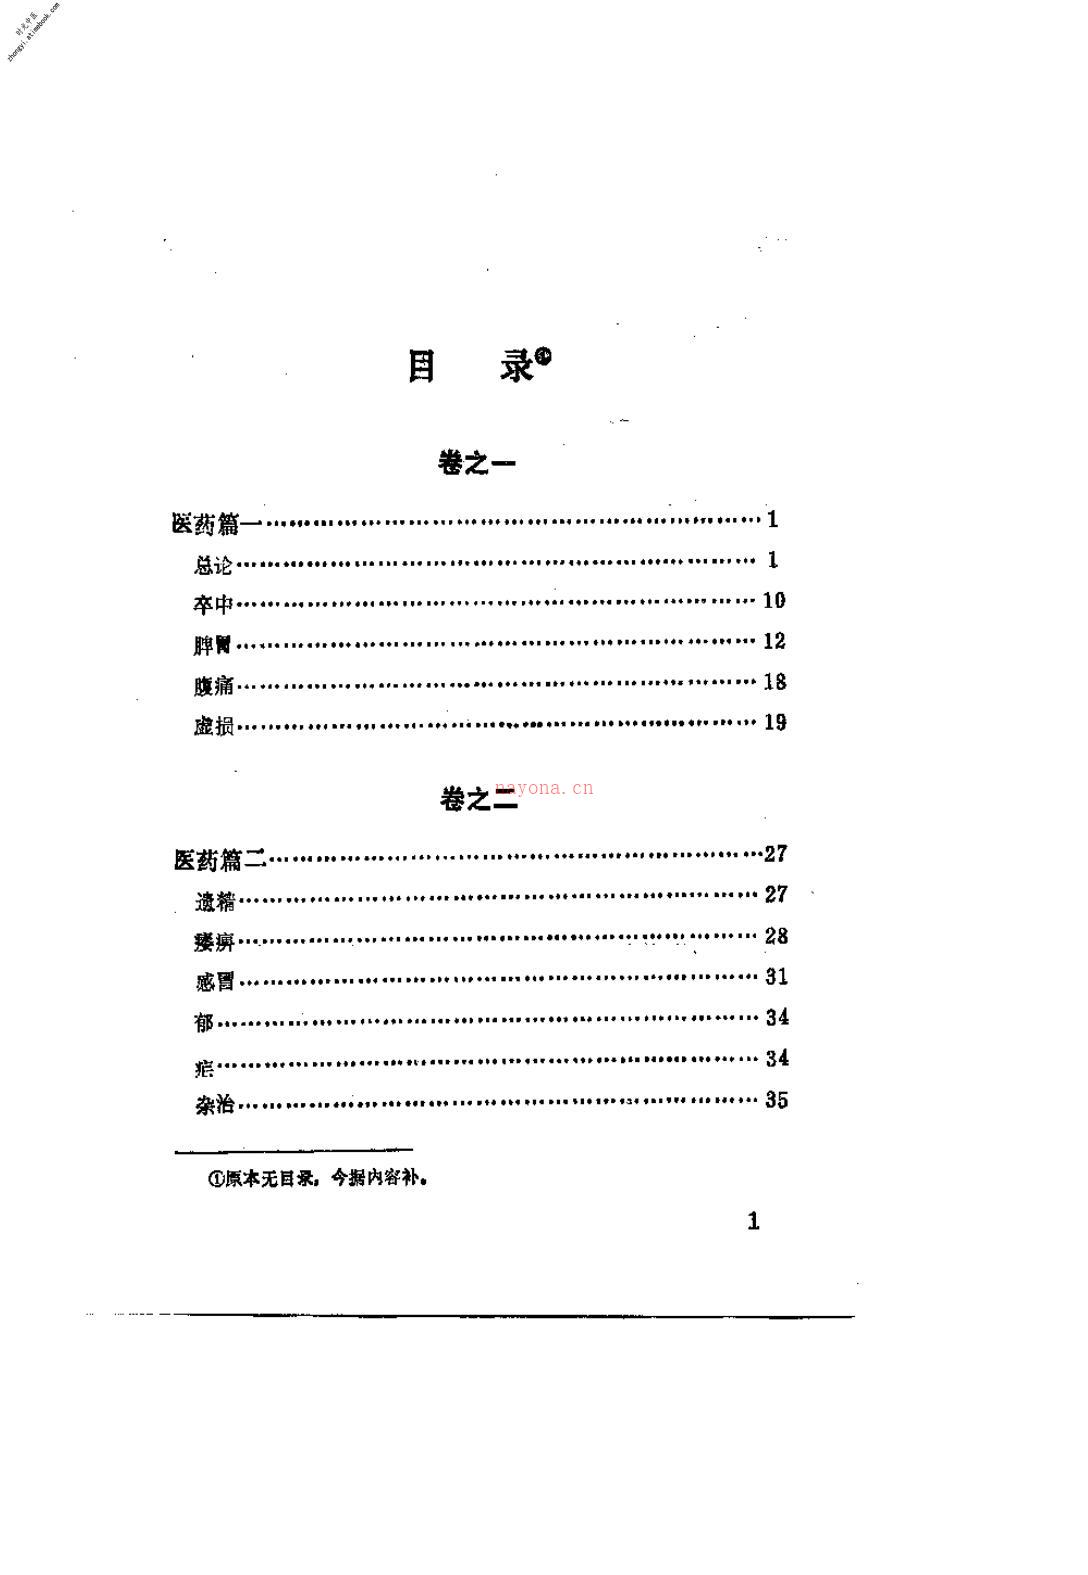 折肱漫录-张天嵩制作 PDF电子版下载